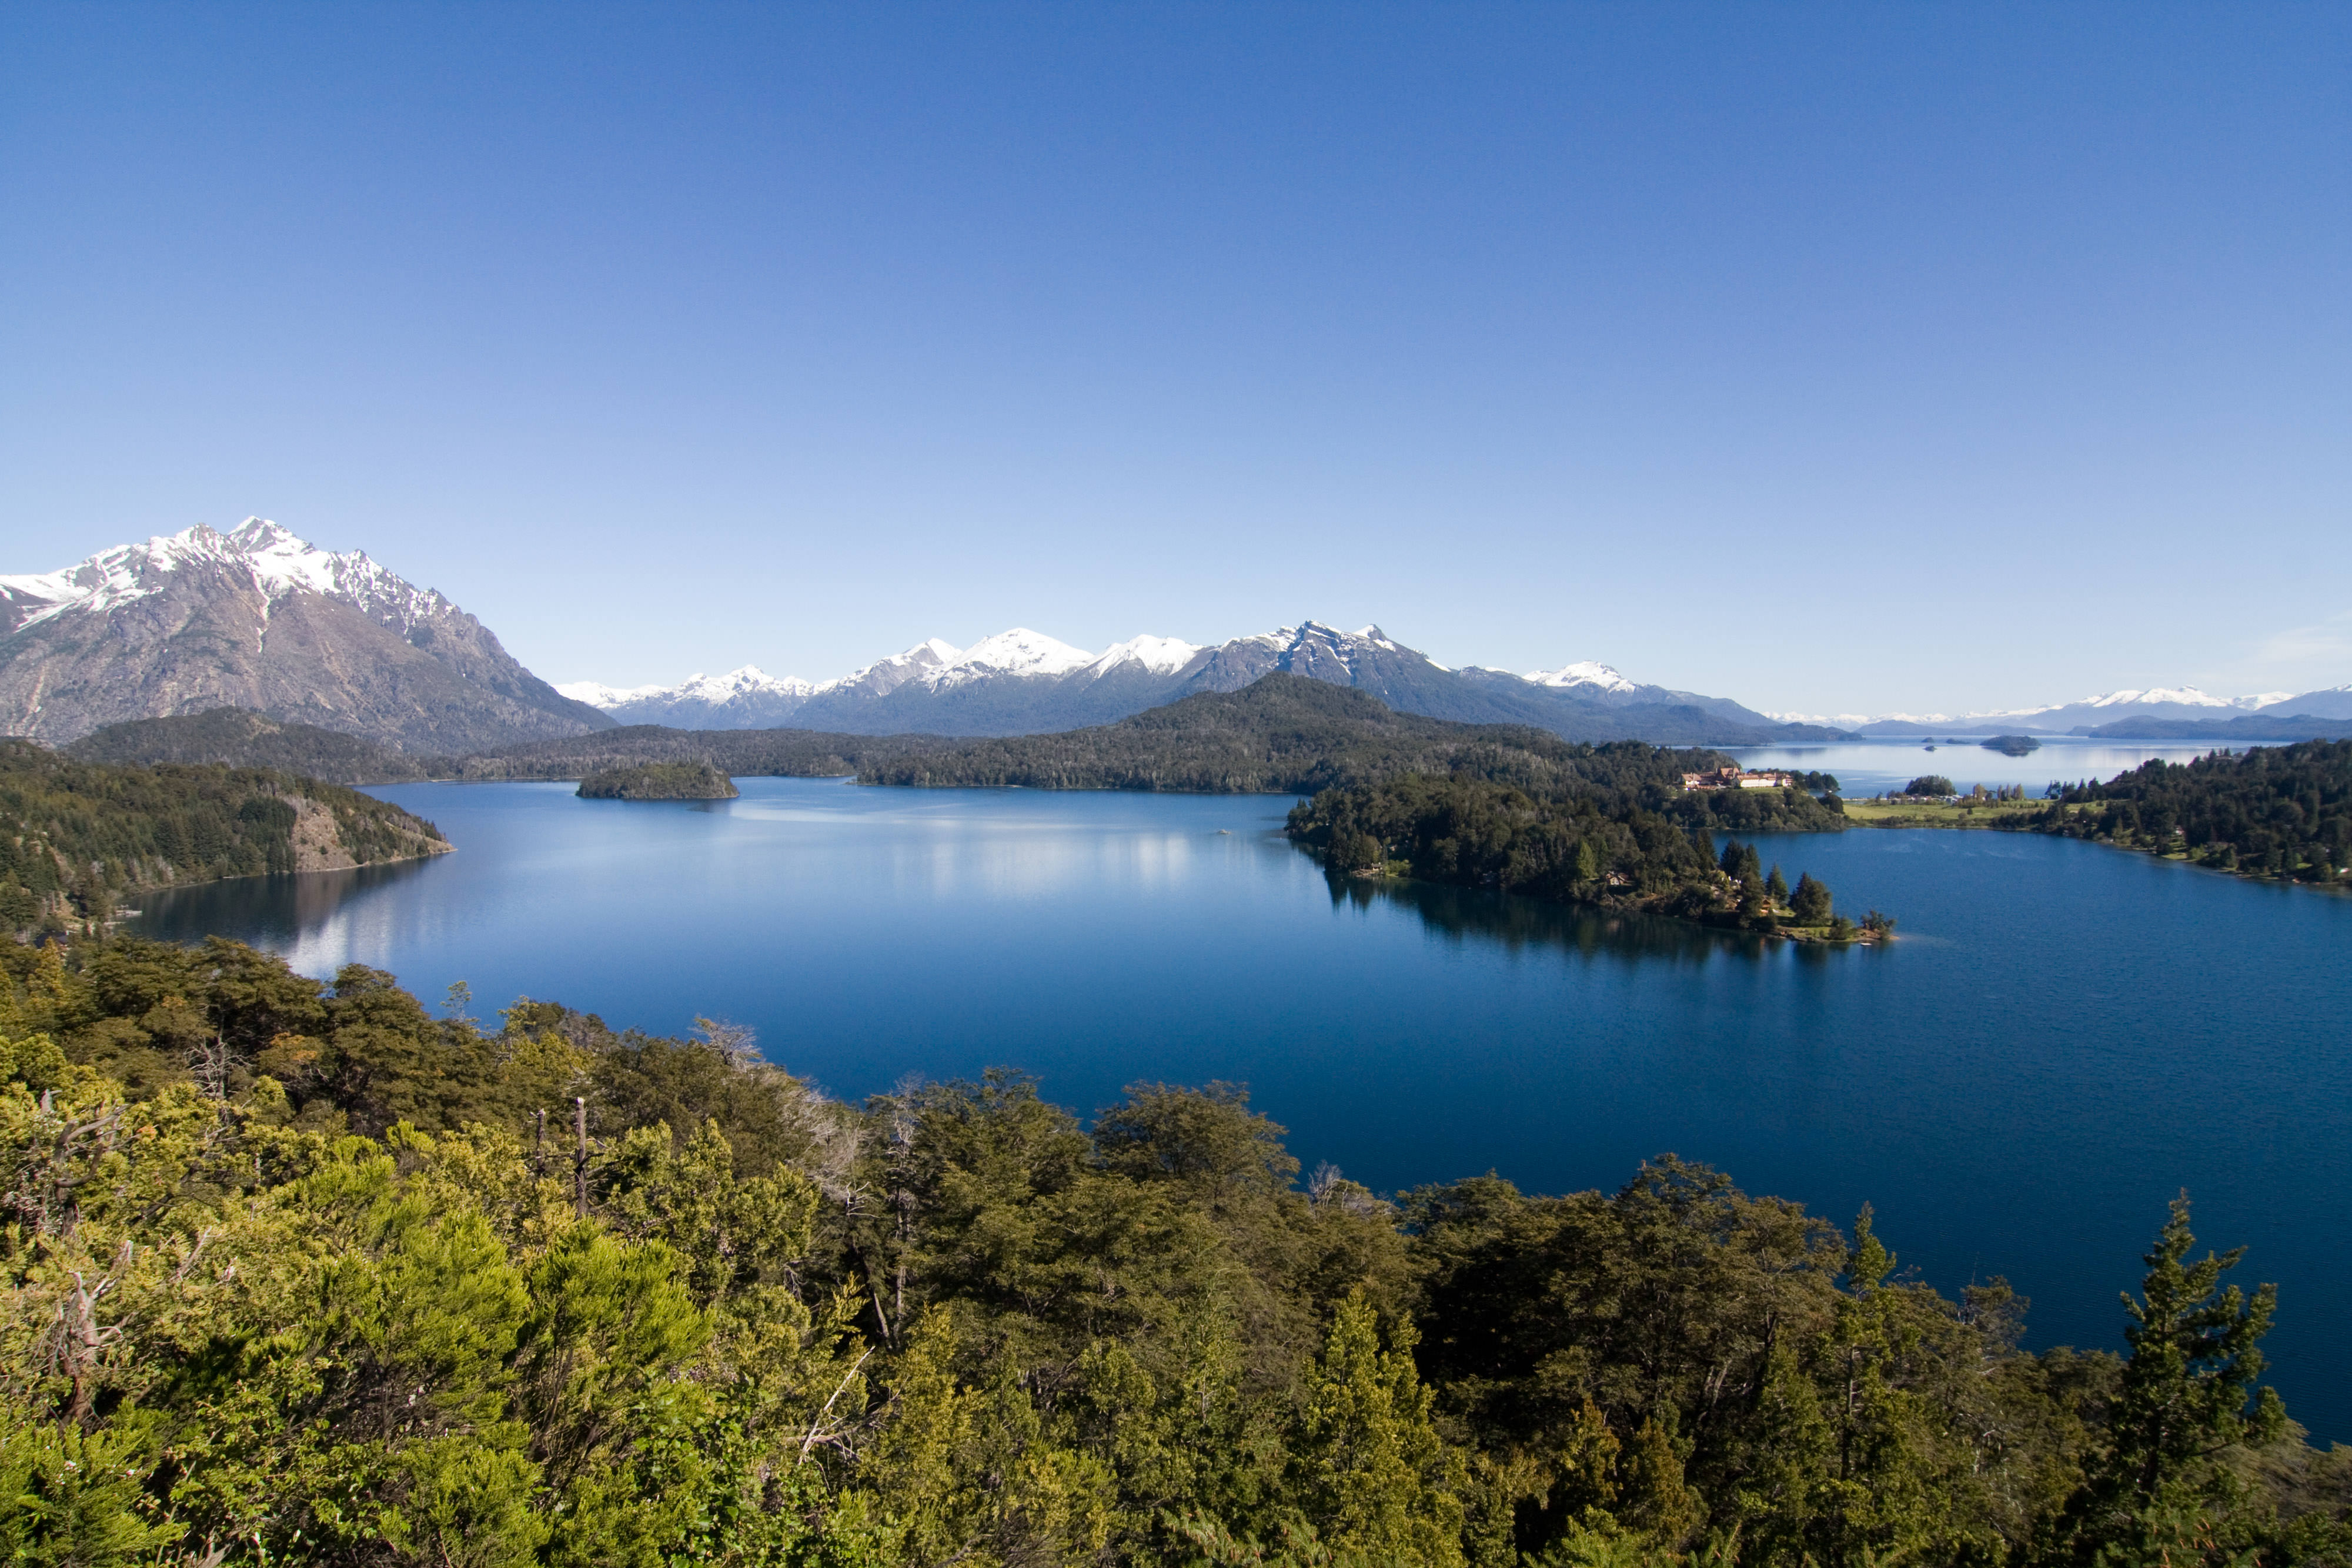 View of Nahuel-Huapi Lake in the Nahuel Huapi National Park of Argentina.